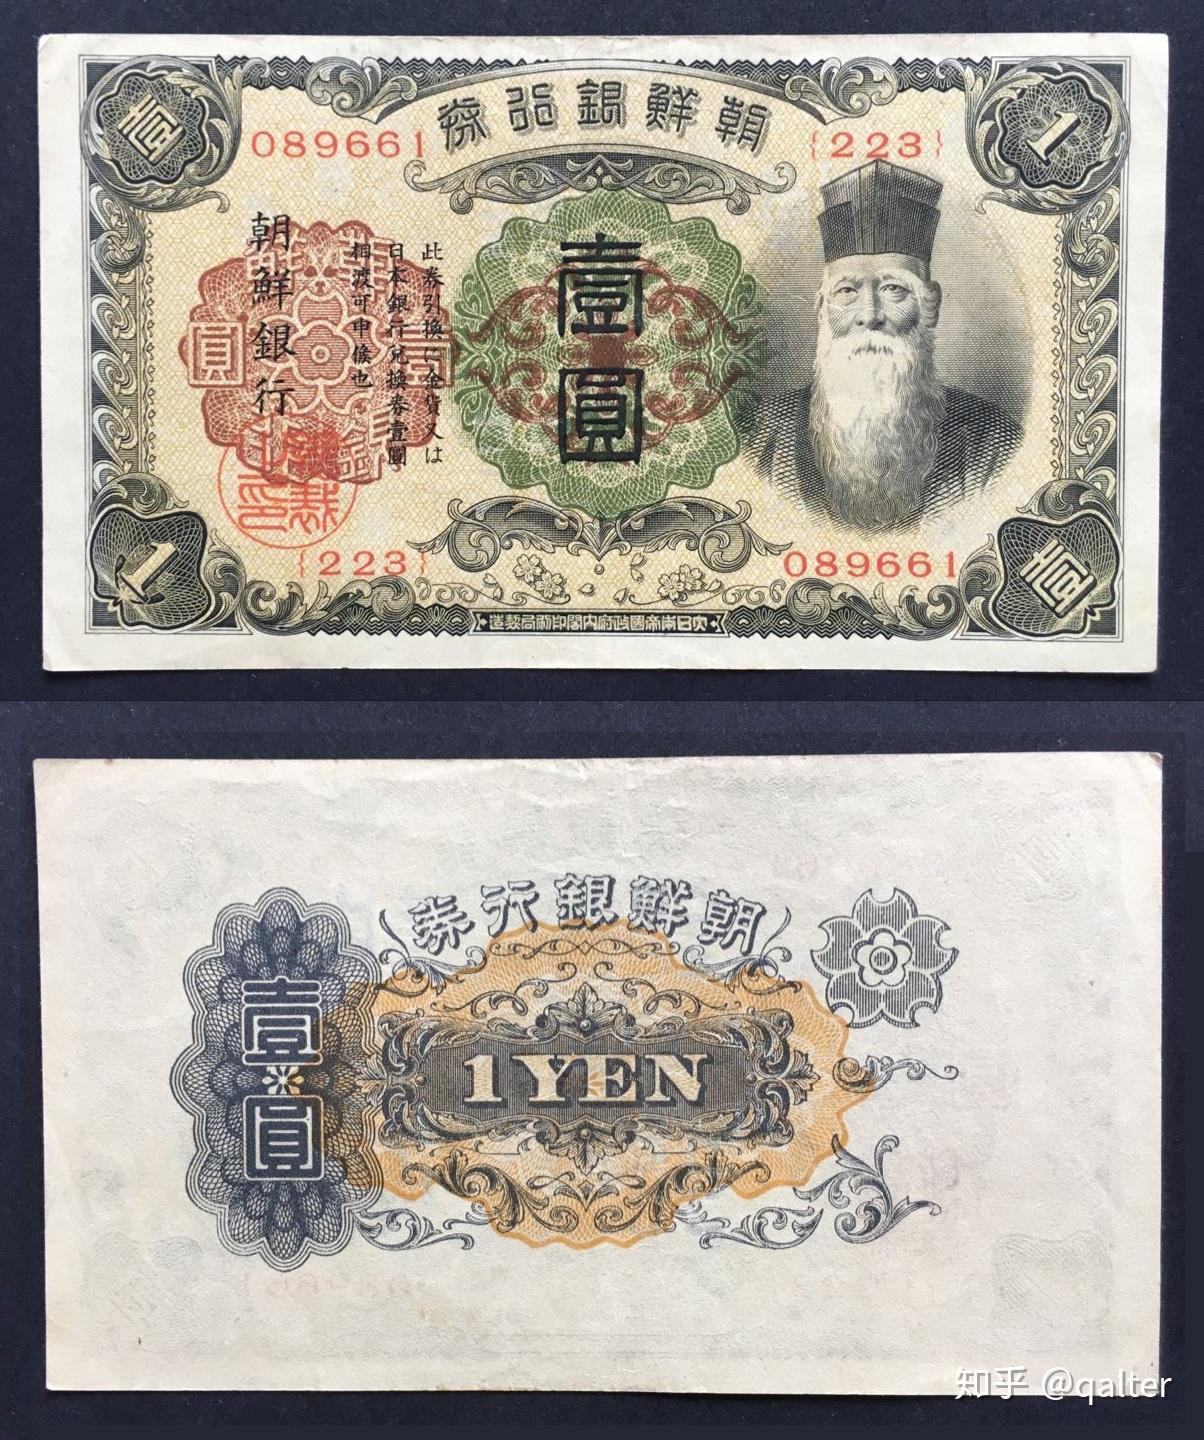 日本的硬币和纸币上分别都是什么图案呢？（附有日文和中文版） - 哔哩哔哩